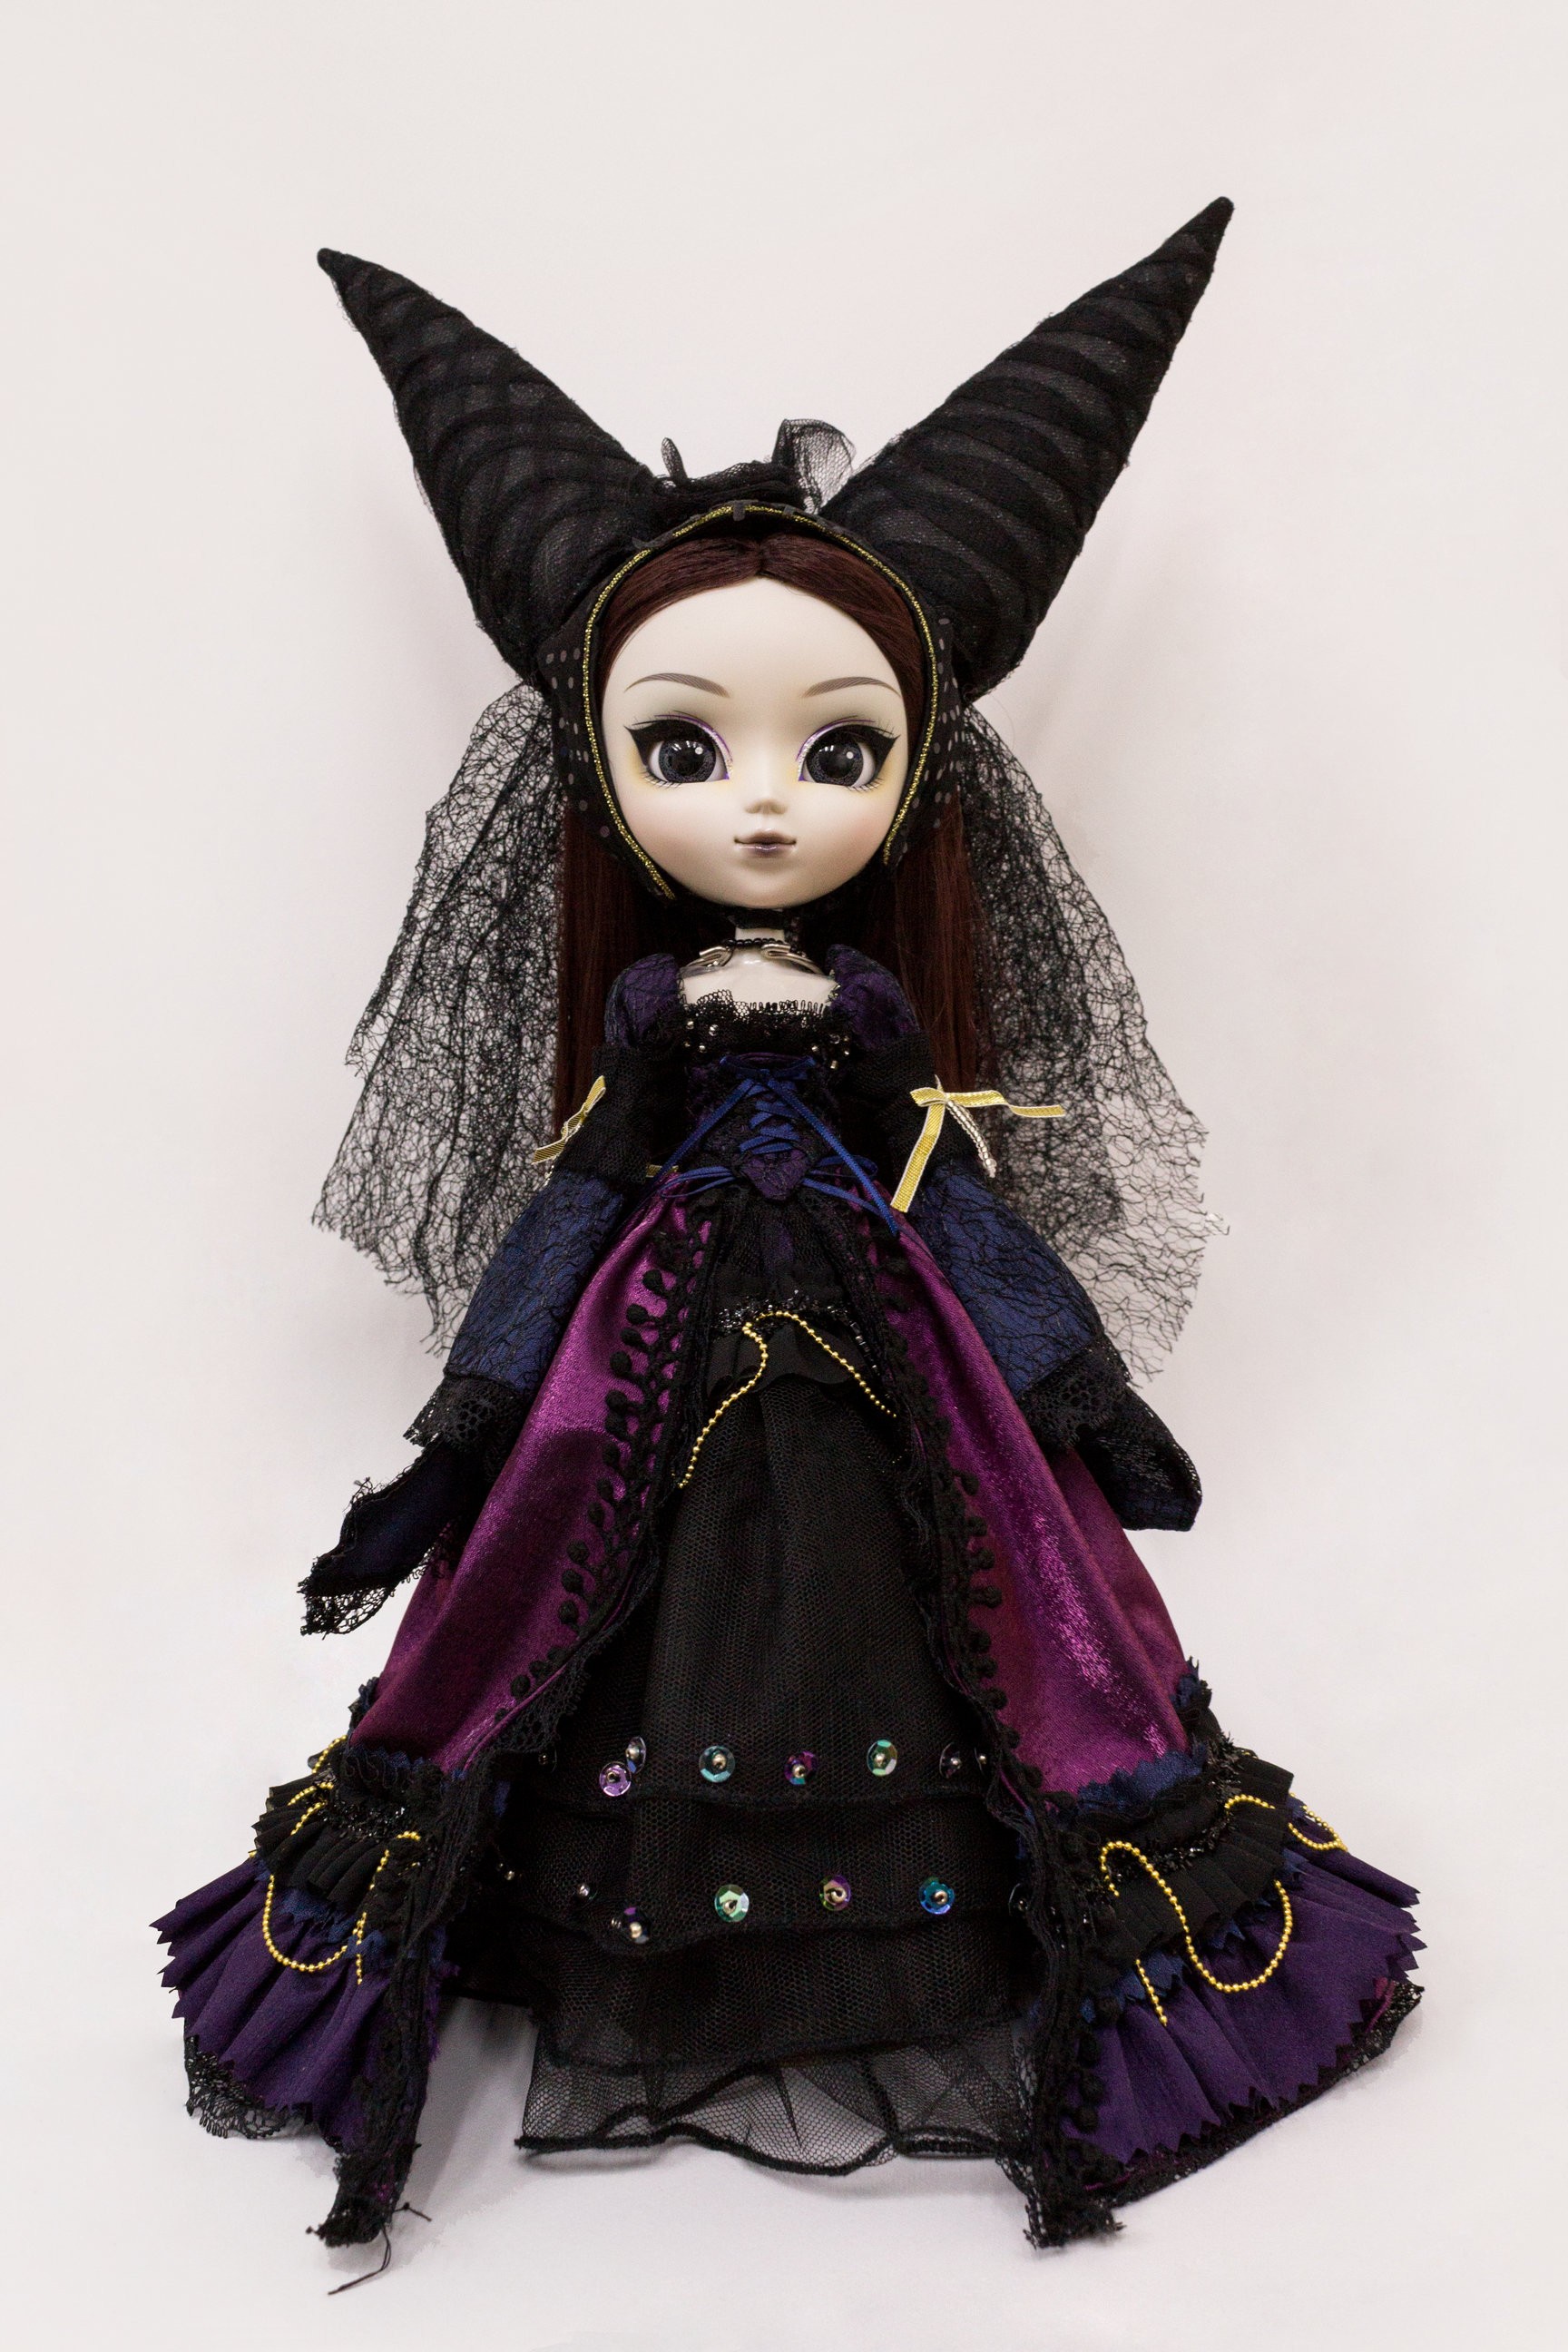 https://cdnk.dolls.moe/4009/muneca-pullip-groove-midnight-velvet-doll-poupee.jpg